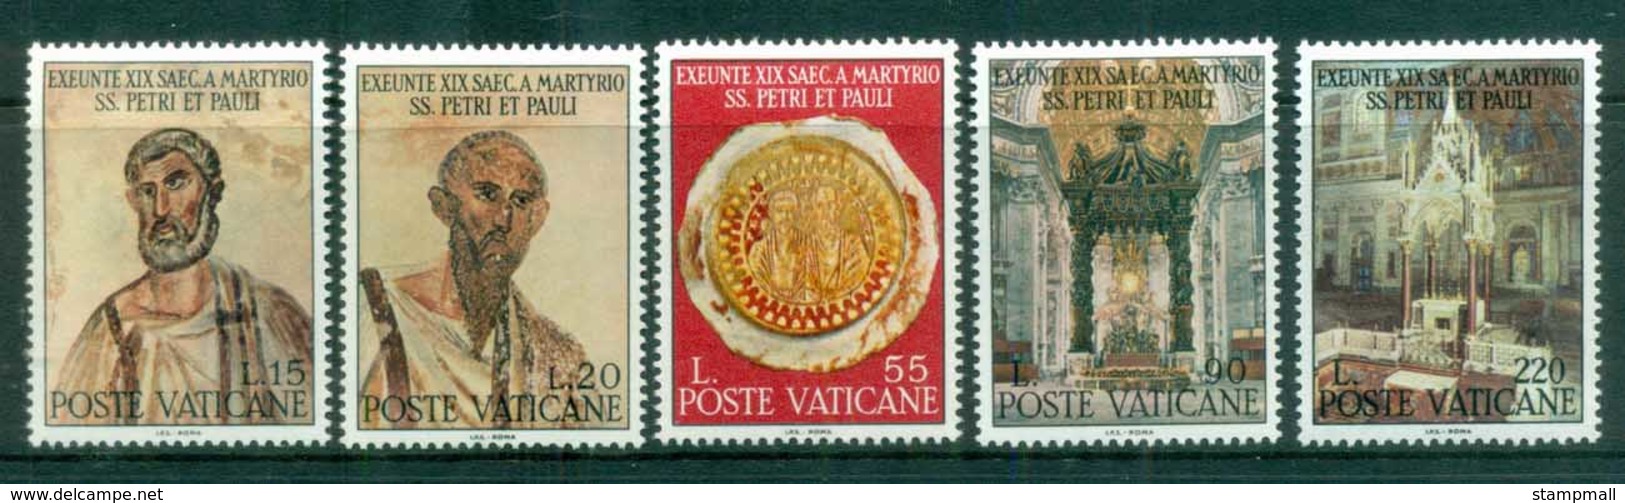 Vatican 1967 Martyrdon Of Apostles Peter & Paul MUH - Unused Stamps